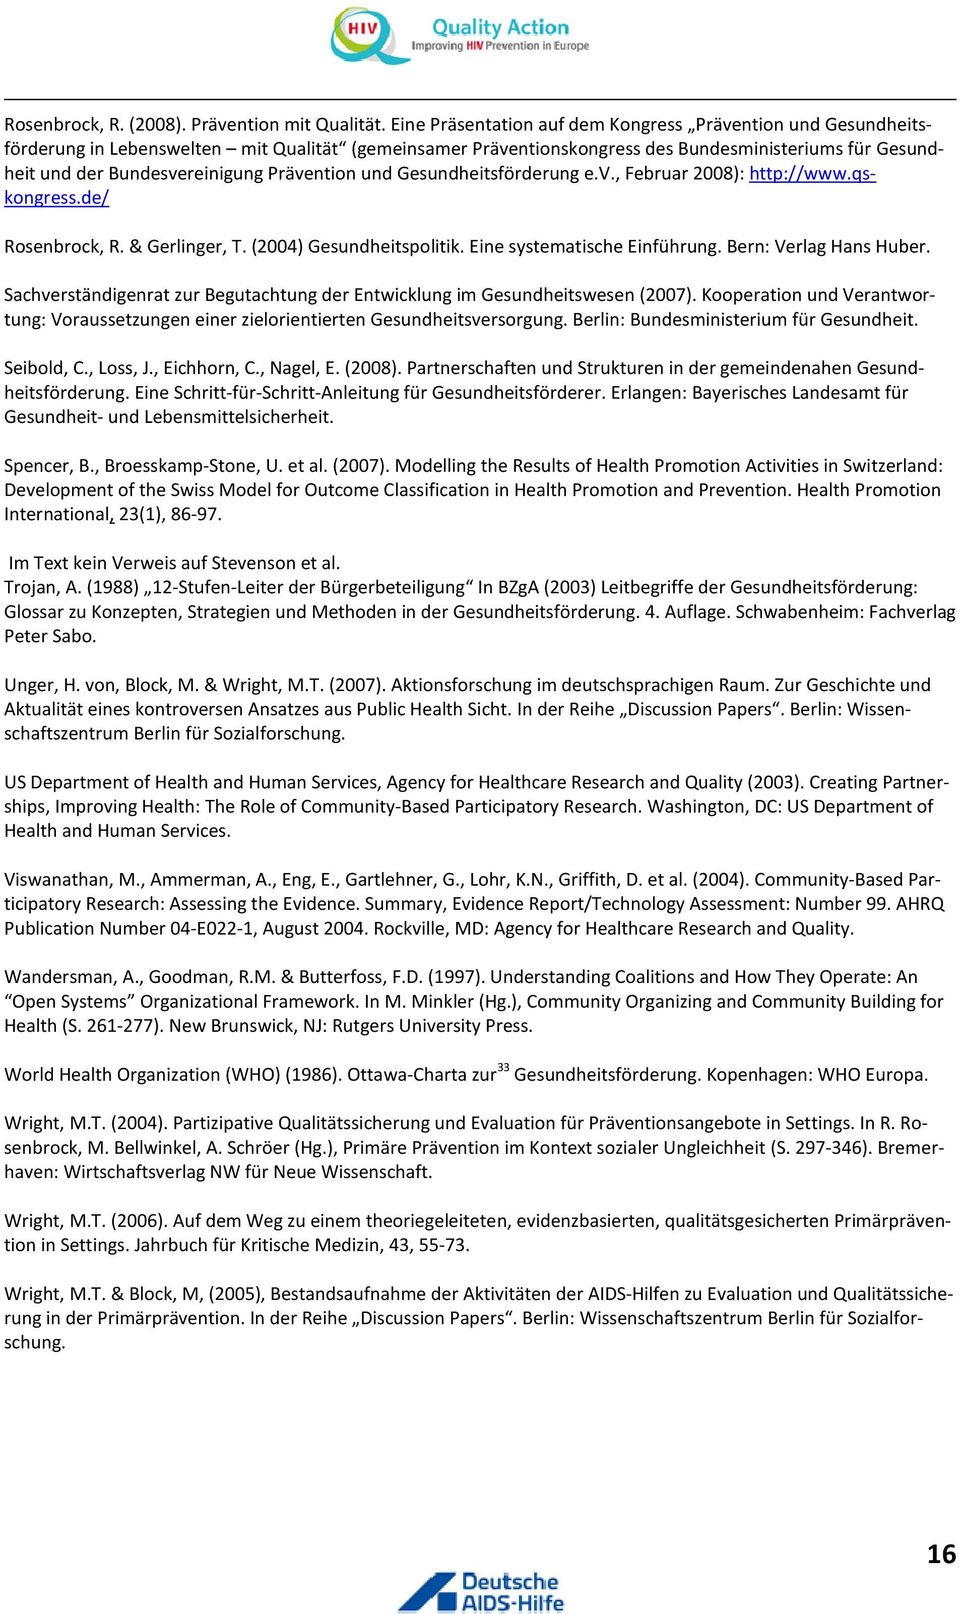 Prävention und Gesundheitsförderung e.v., Februar 2008): http://www.qskongress.de/ Rosenbrock, R. & Gerlinger, T. (2004) Gesundheitspolitik. Eine systematische Einführung. Bern: Verlag Hans Huber.